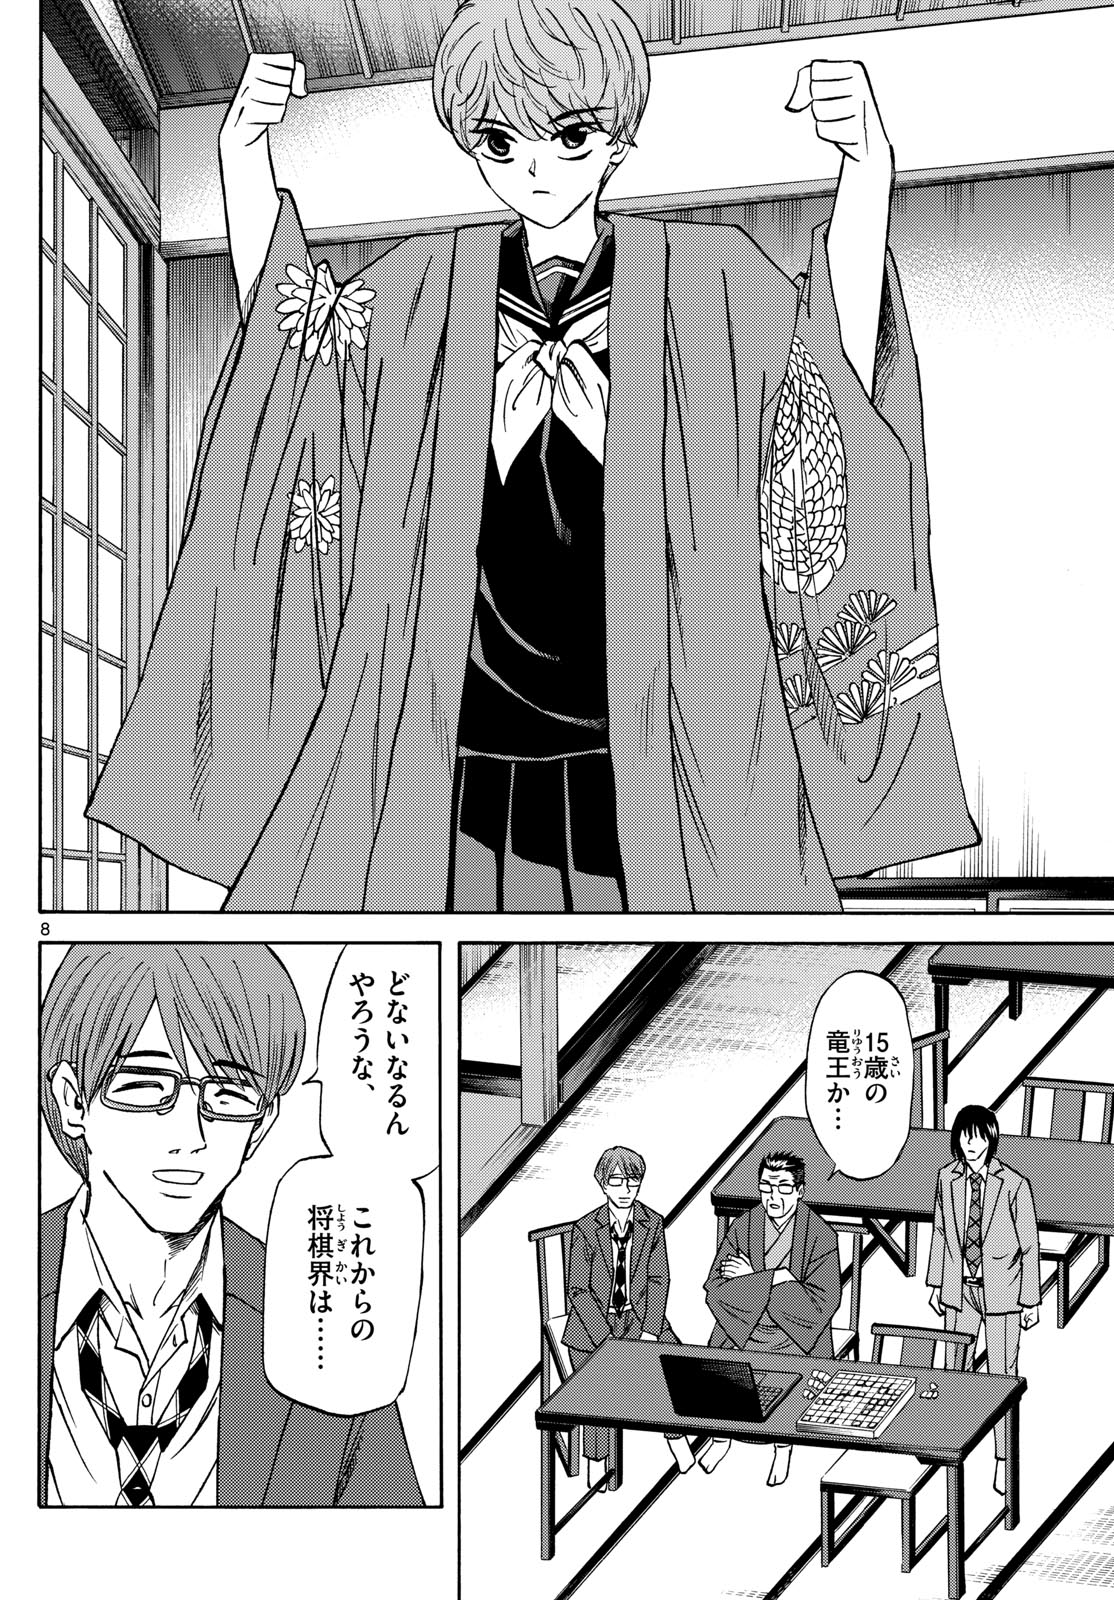 Tatsu to Ichigo - Chapter 180 - Page 8